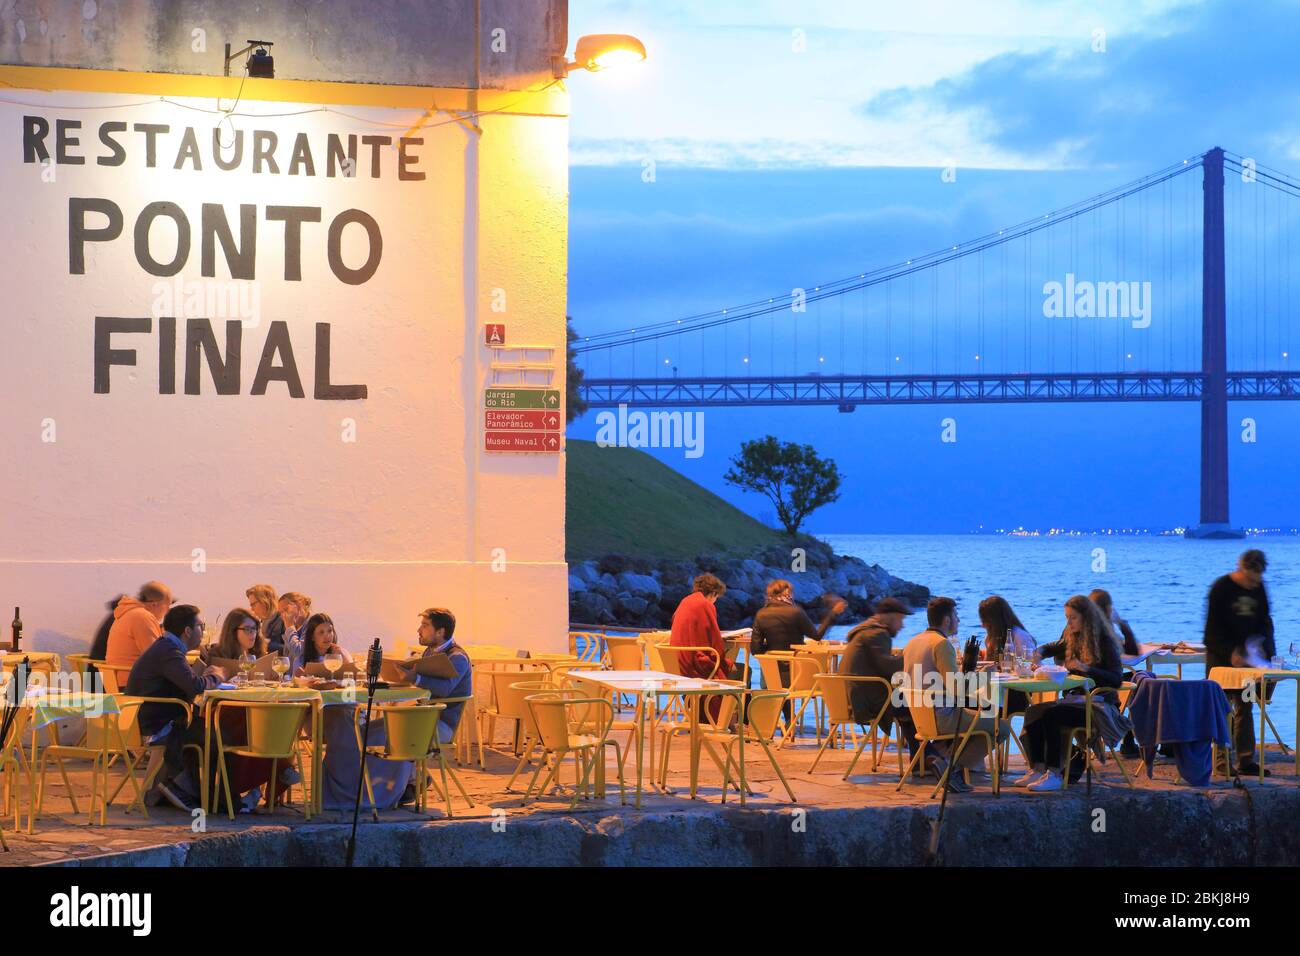 Portugal, Lisbonne, Almada, restaurant portugais traditionnel Pon final sur le Tage avec Ponte 25 de Abril en arrière-plan Banque D'Images